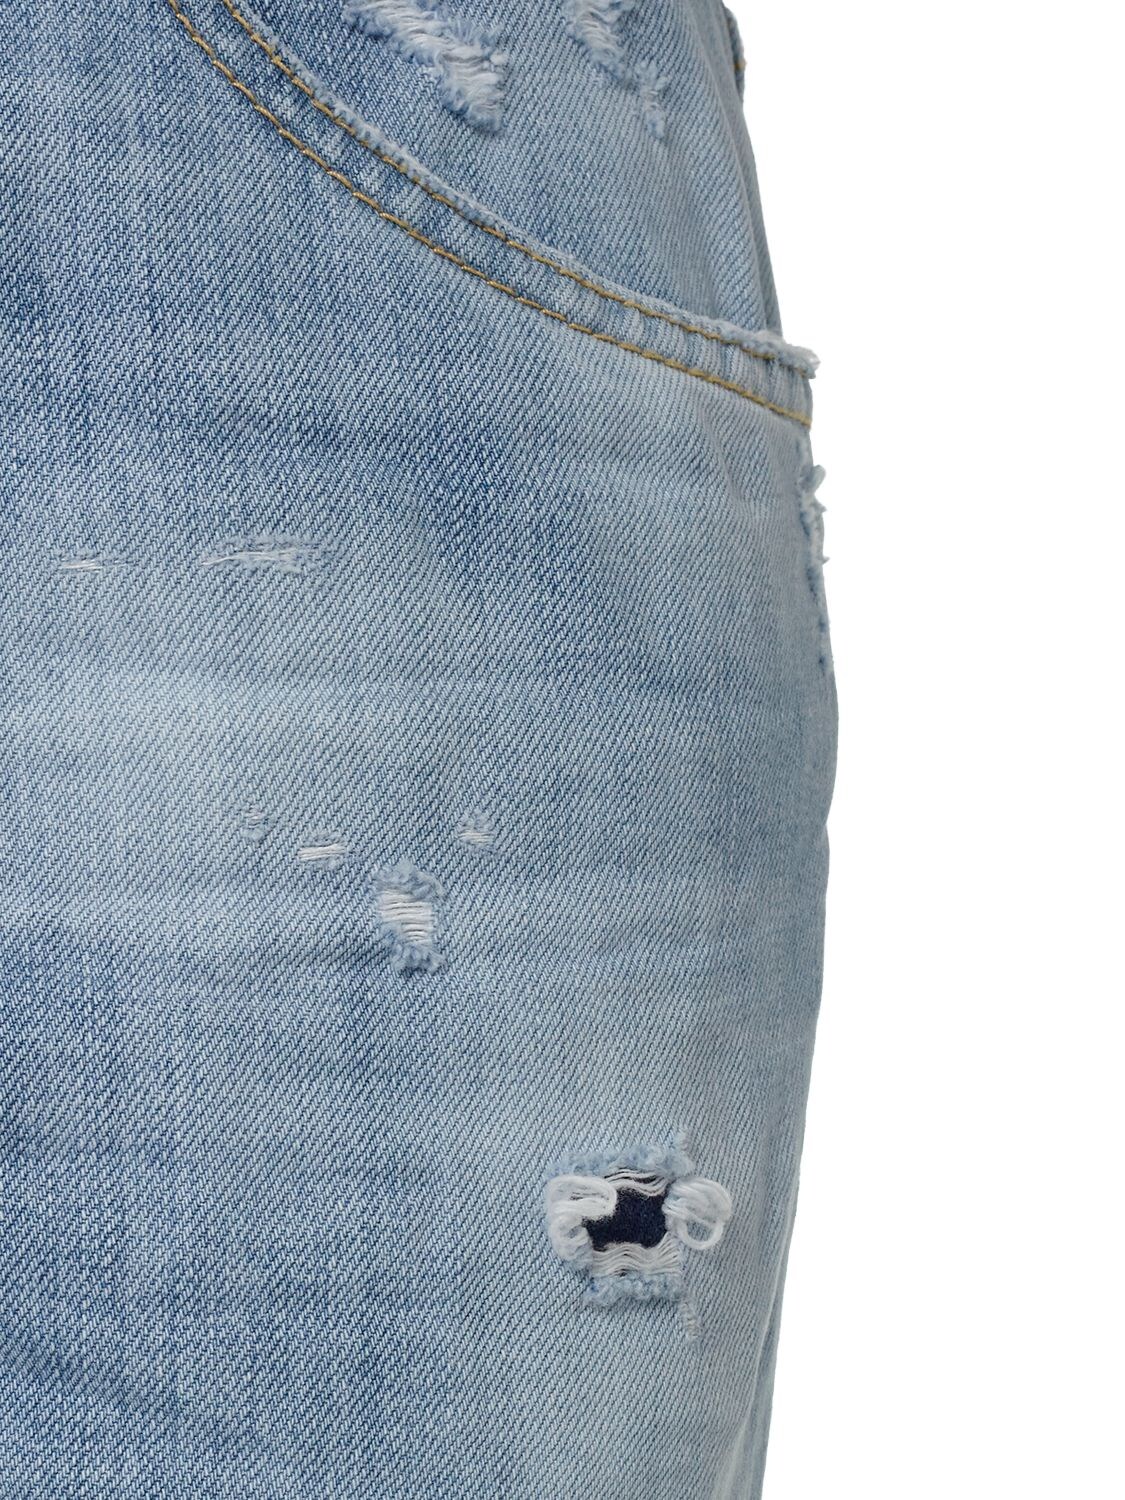 Shop Dsquared2 Bootcut Cotton Denim Jeans In Blue